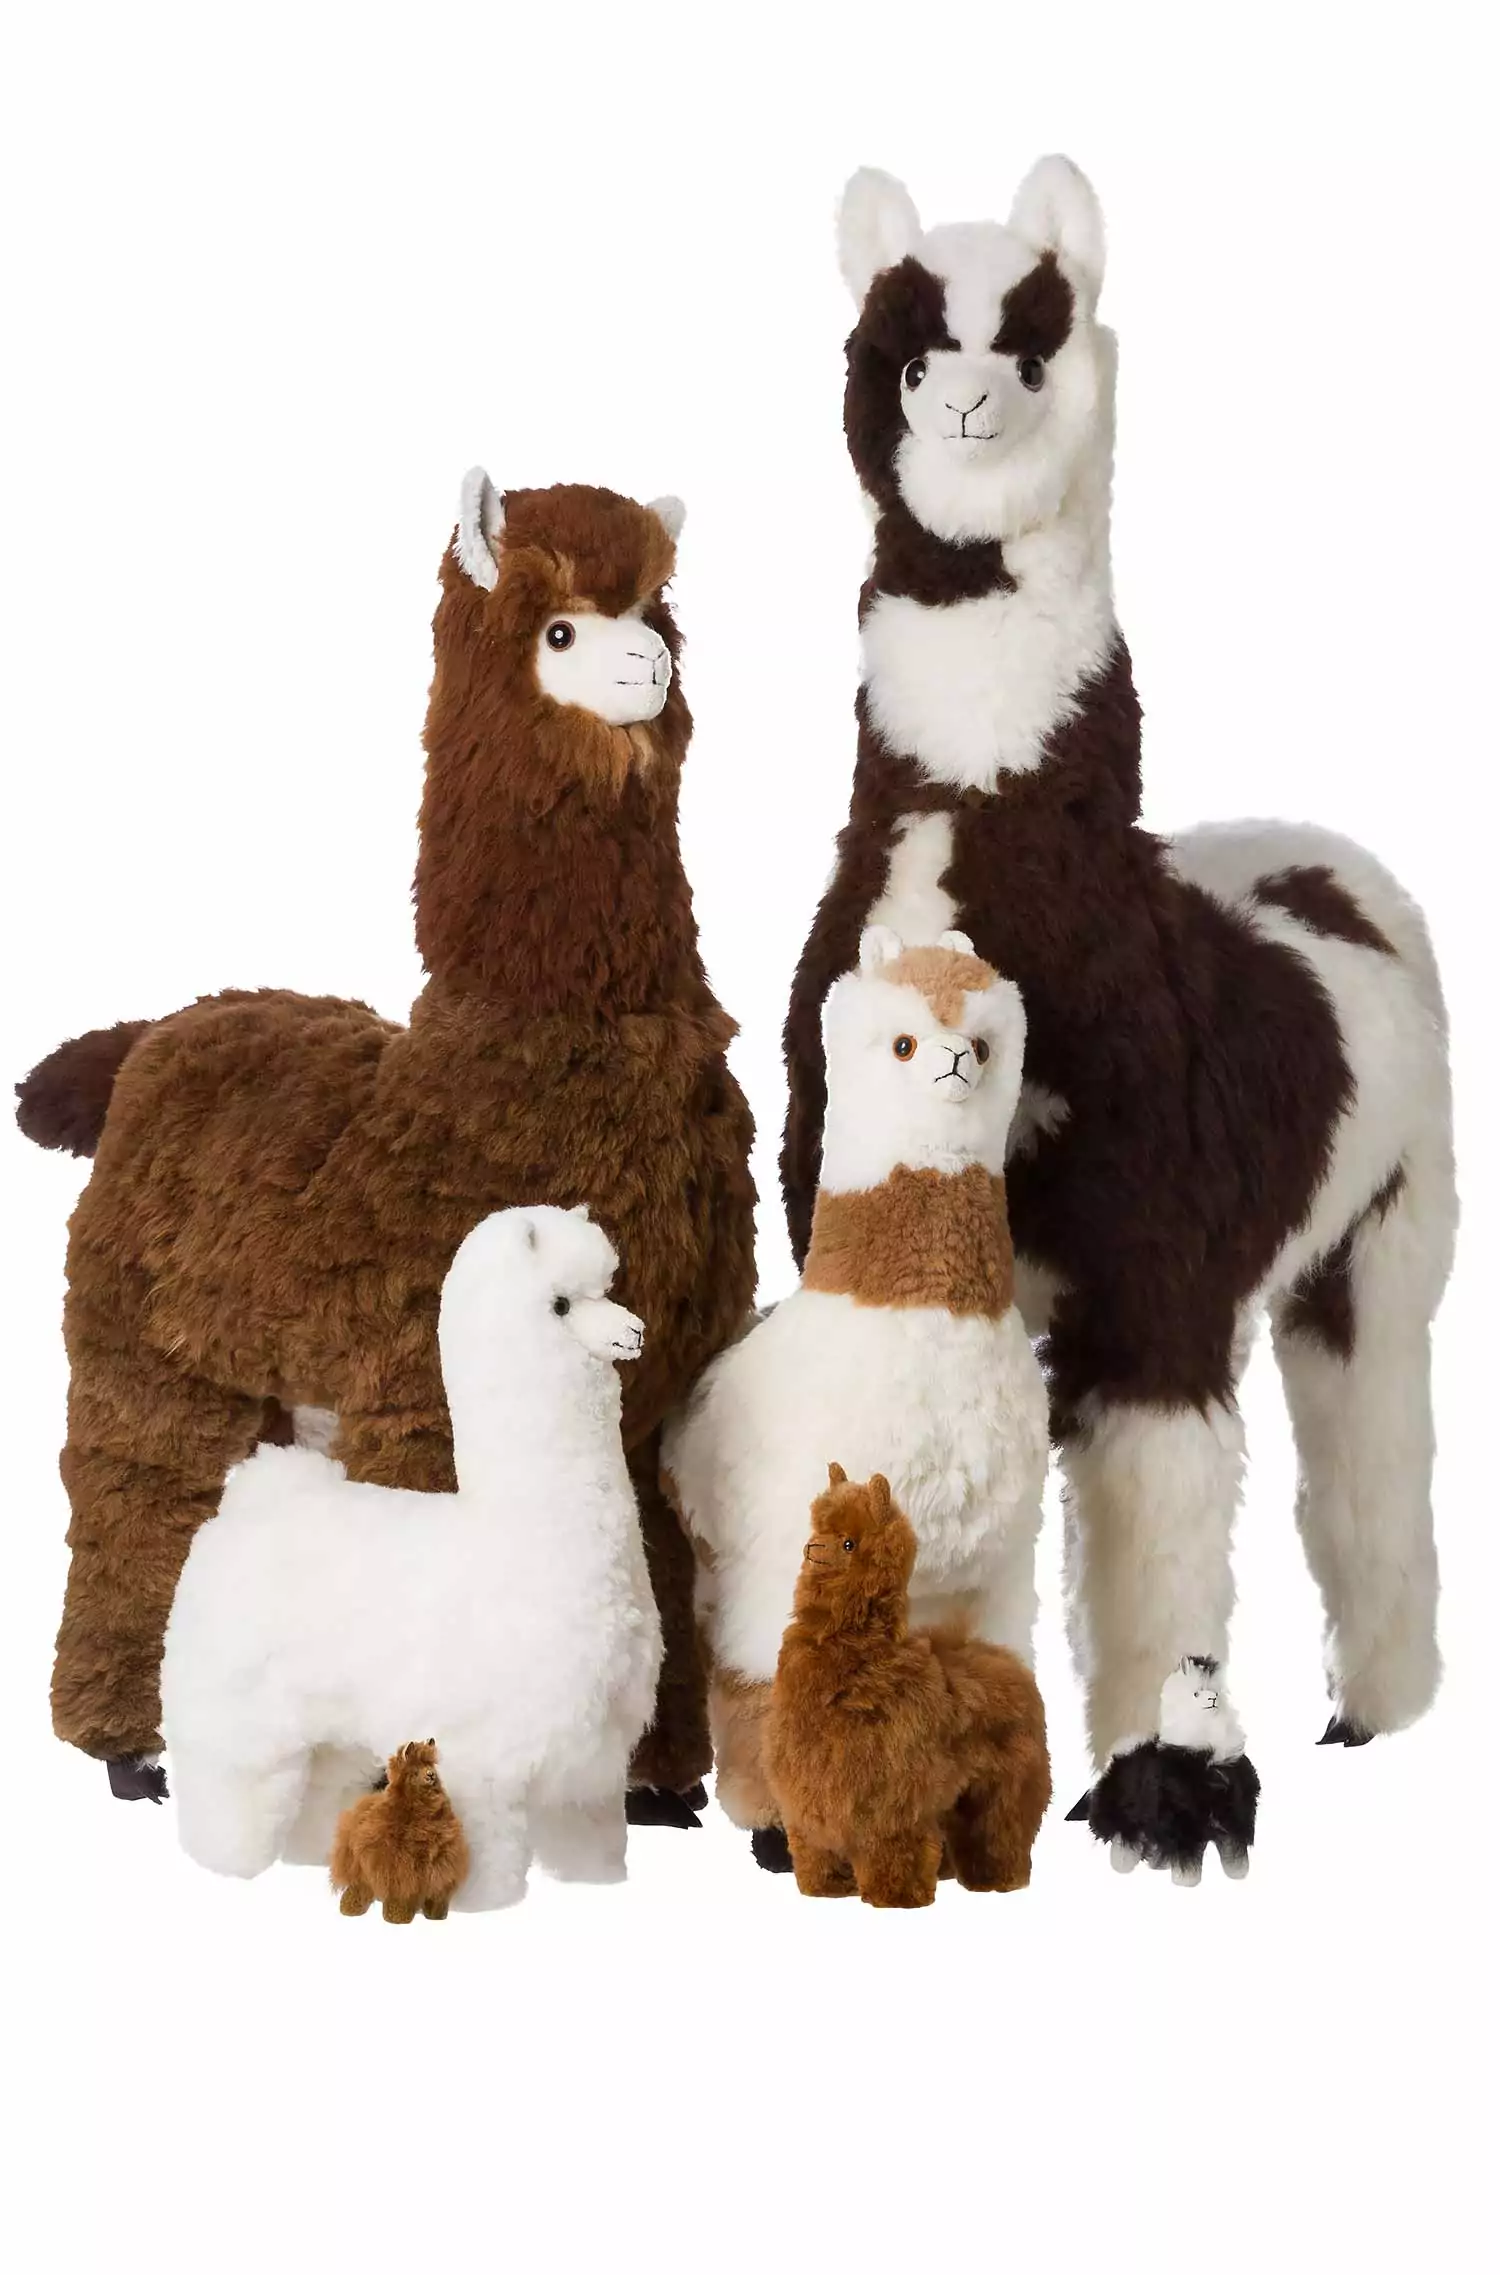 Per rundvlees van mening zijn Alpaca COZY FURIOUS ANIMAL (130cm) made of alpaca fur